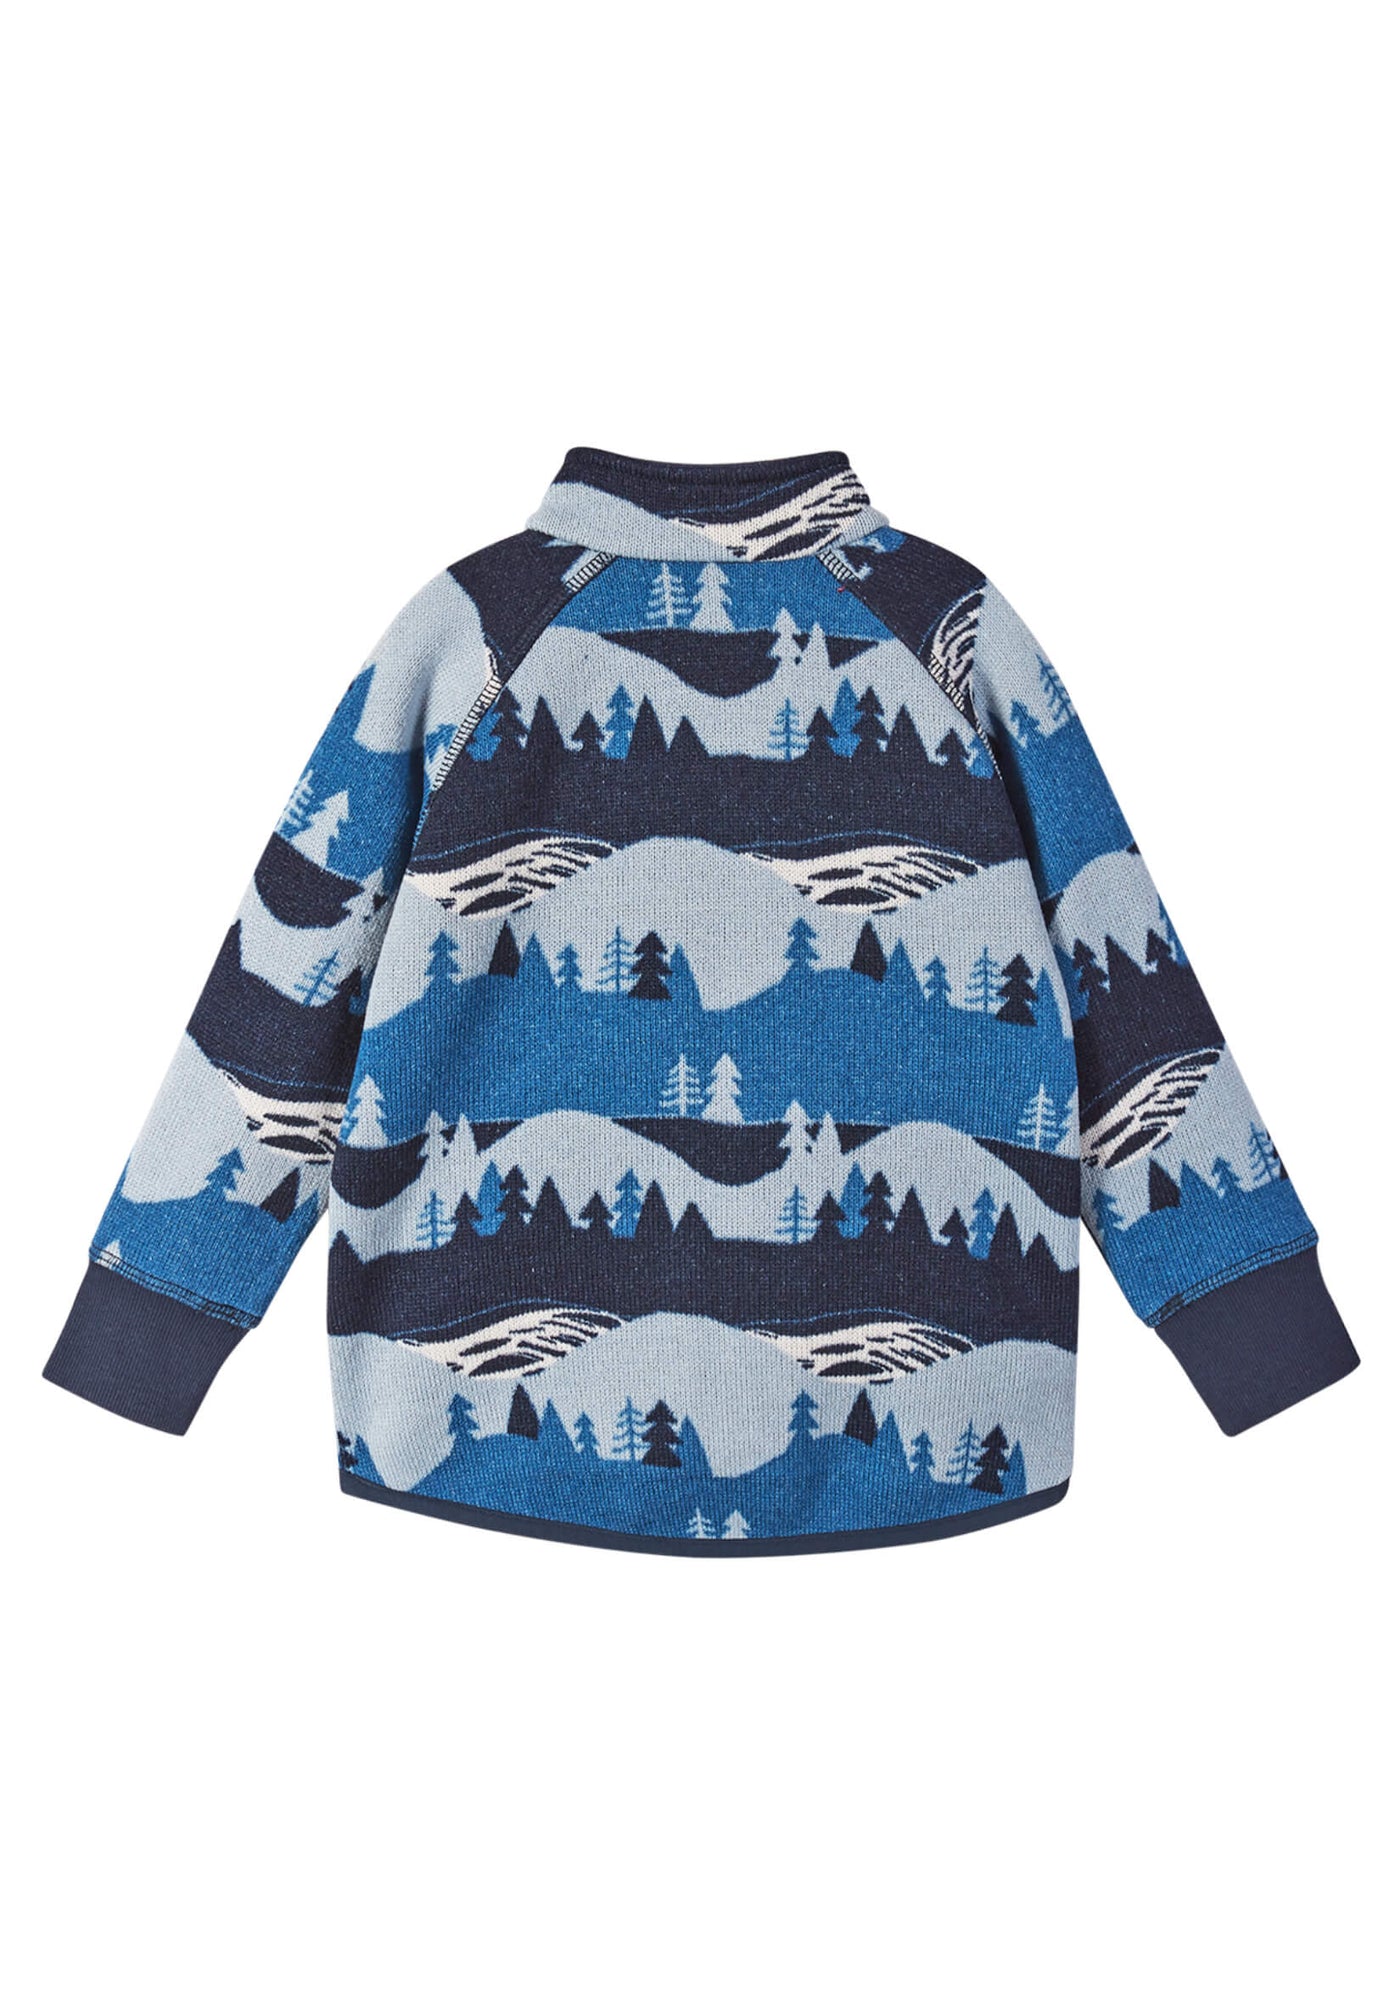 Reima Ornament Fleece Sweater